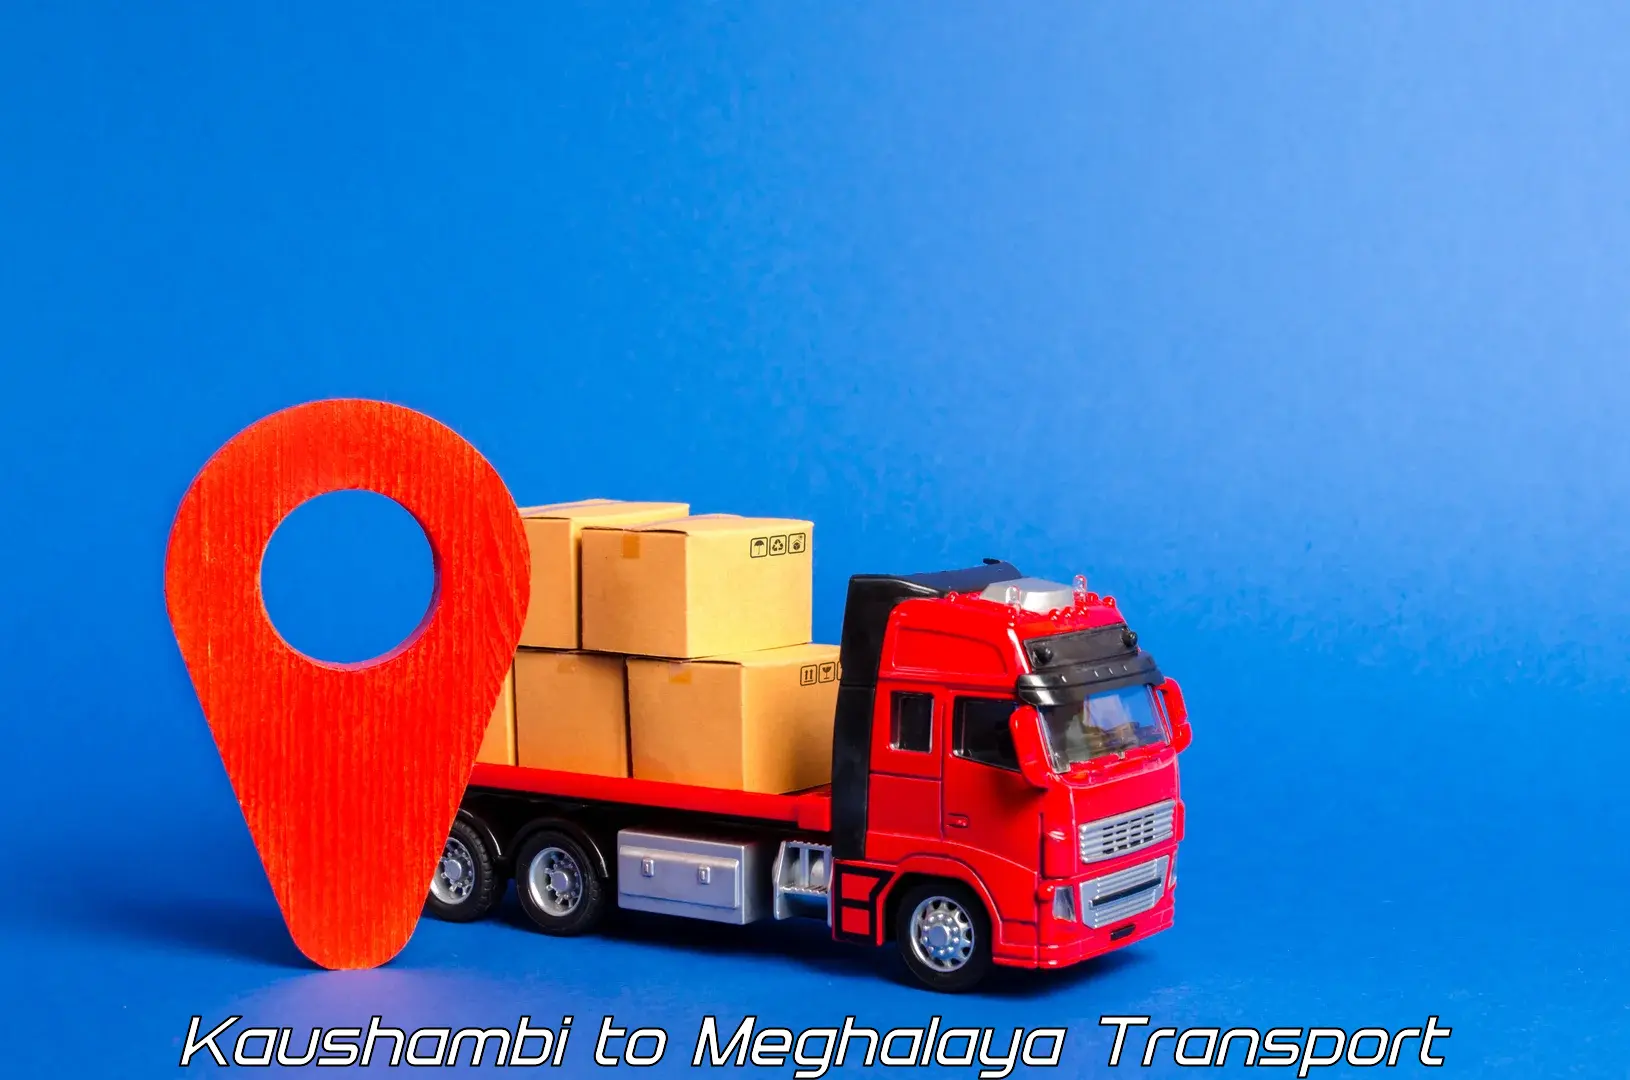 Pick up transport service Kaushambi to NIT Meghalaya